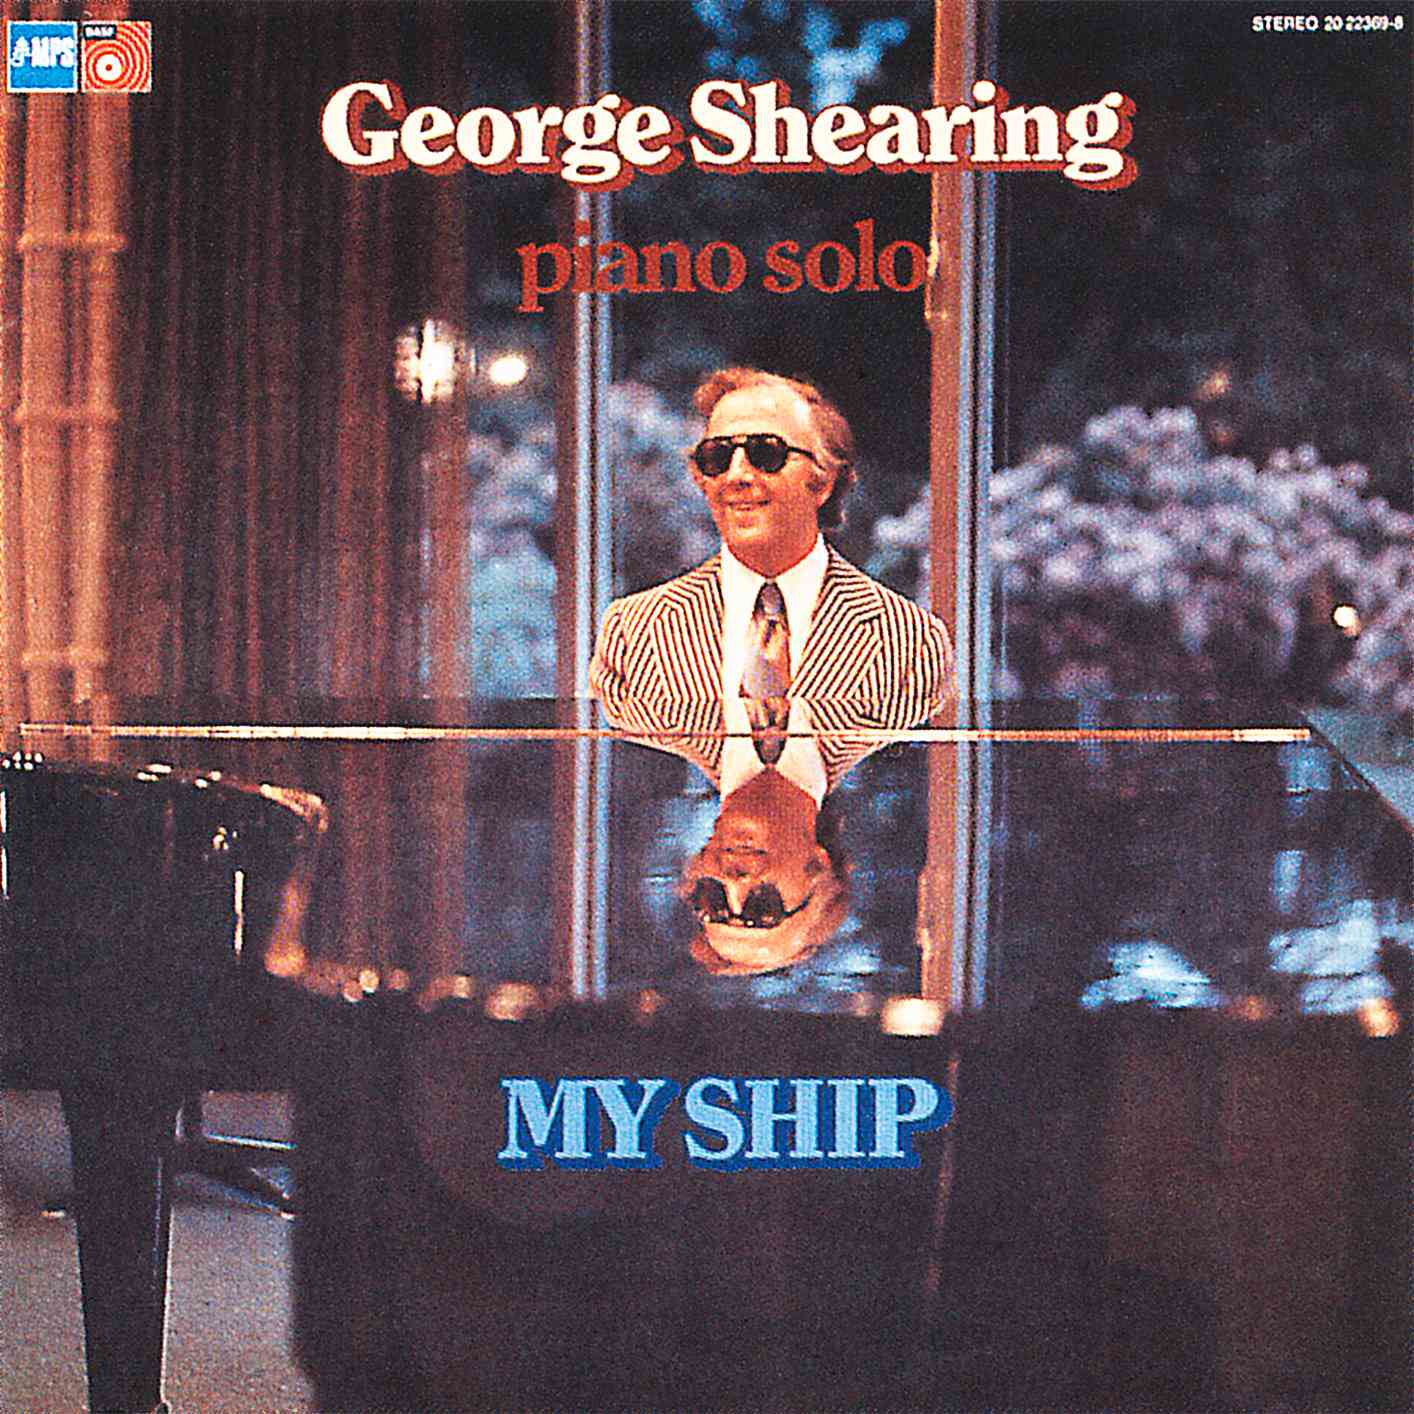 George Shearing - My Ship (1975/2014) [HighResAudio FLAC 24bit/88,2kHz]